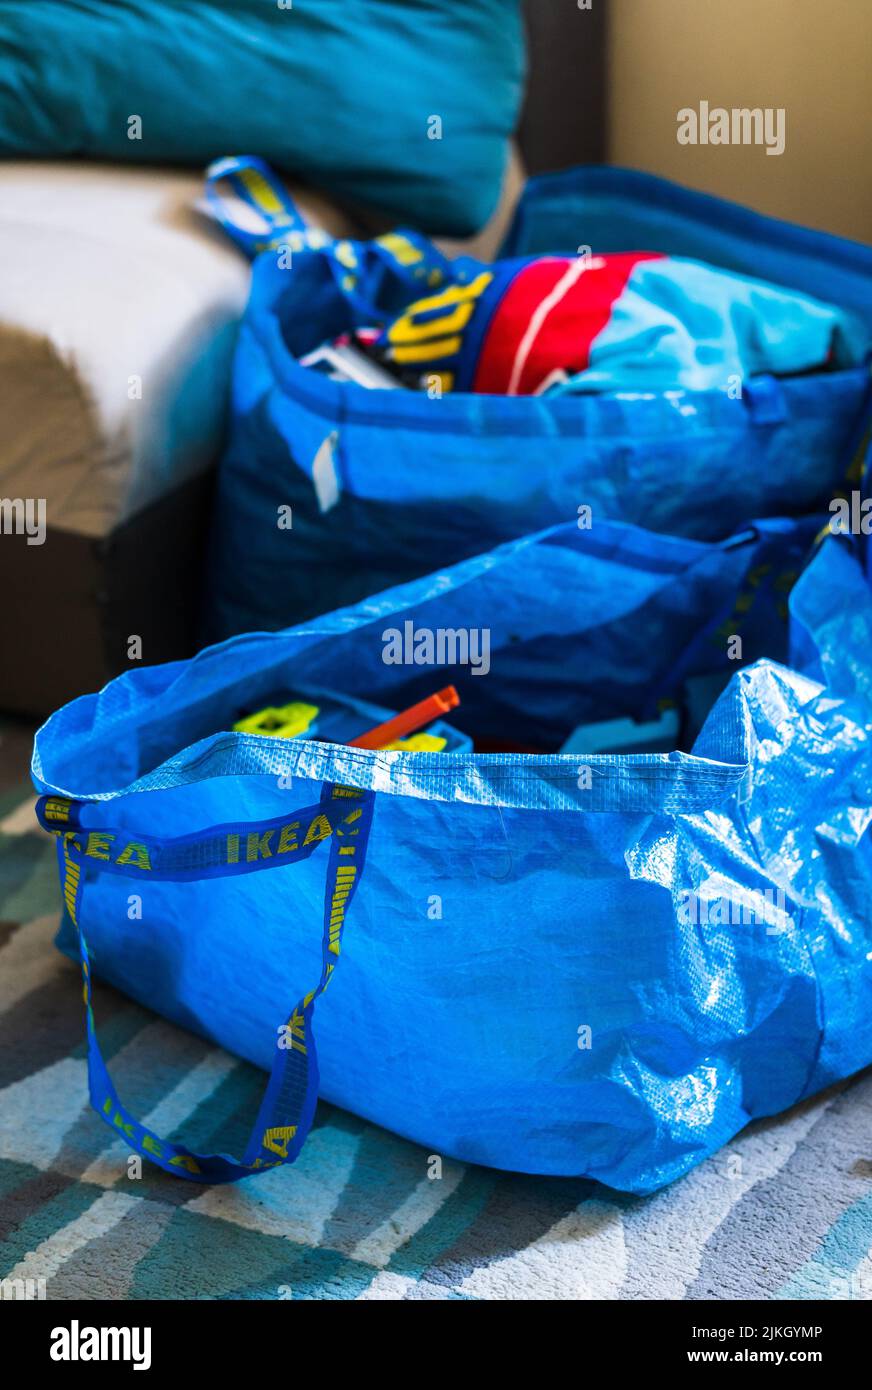 Un primo piano di due borse Ikea blu in plastica su un pavimento in moquette. Foto Stock